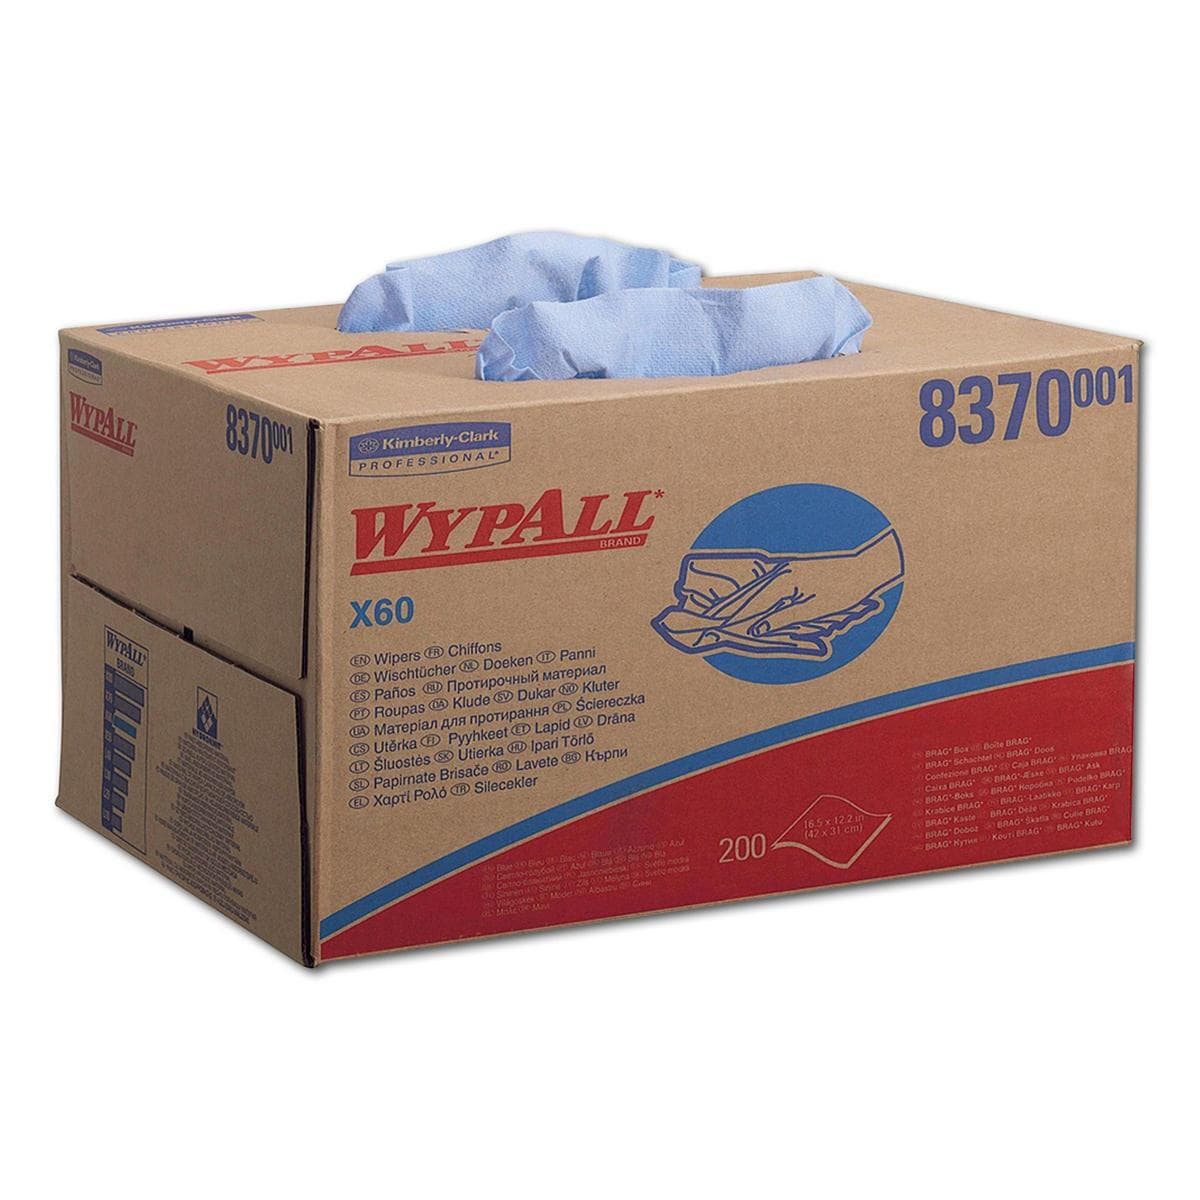 Wypall X60 poetsdoeken blauw - # 8370